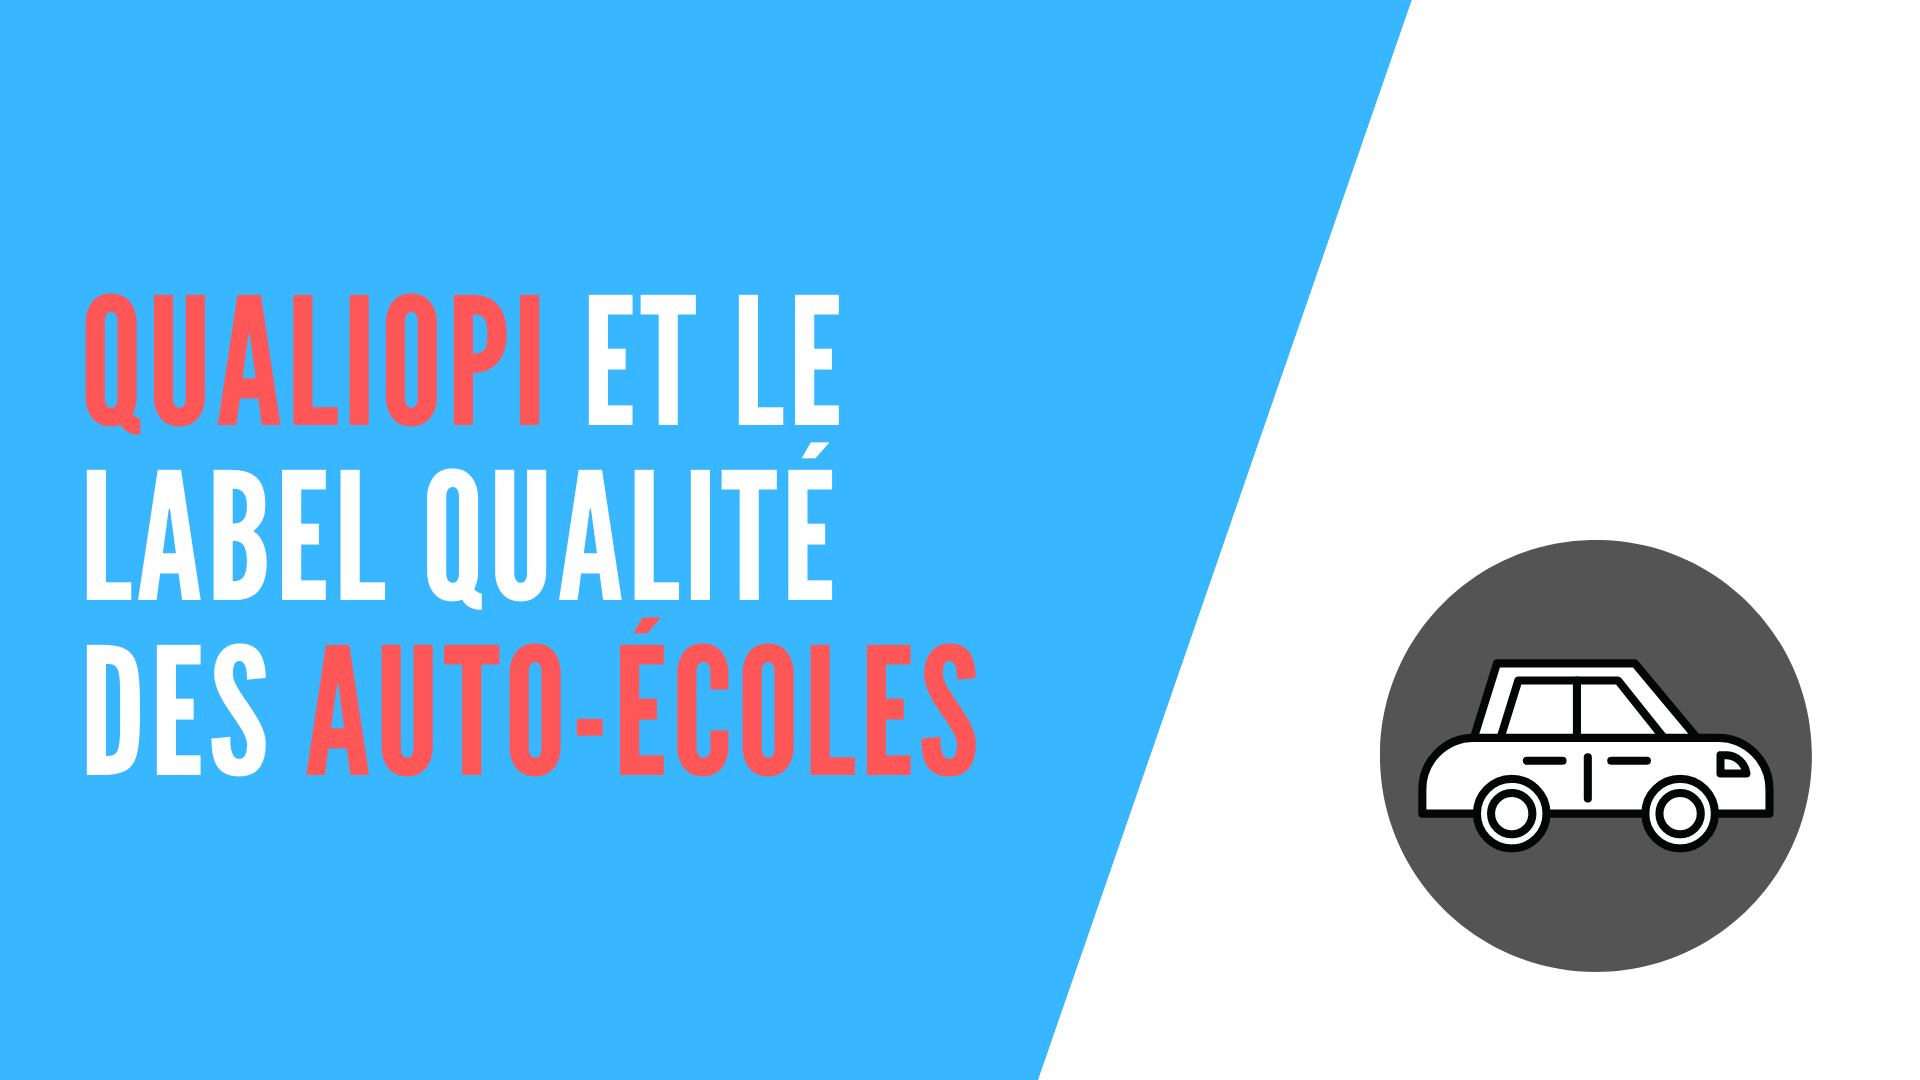 You are currently viewing Qualiopi et le label qualité des auto-écoles